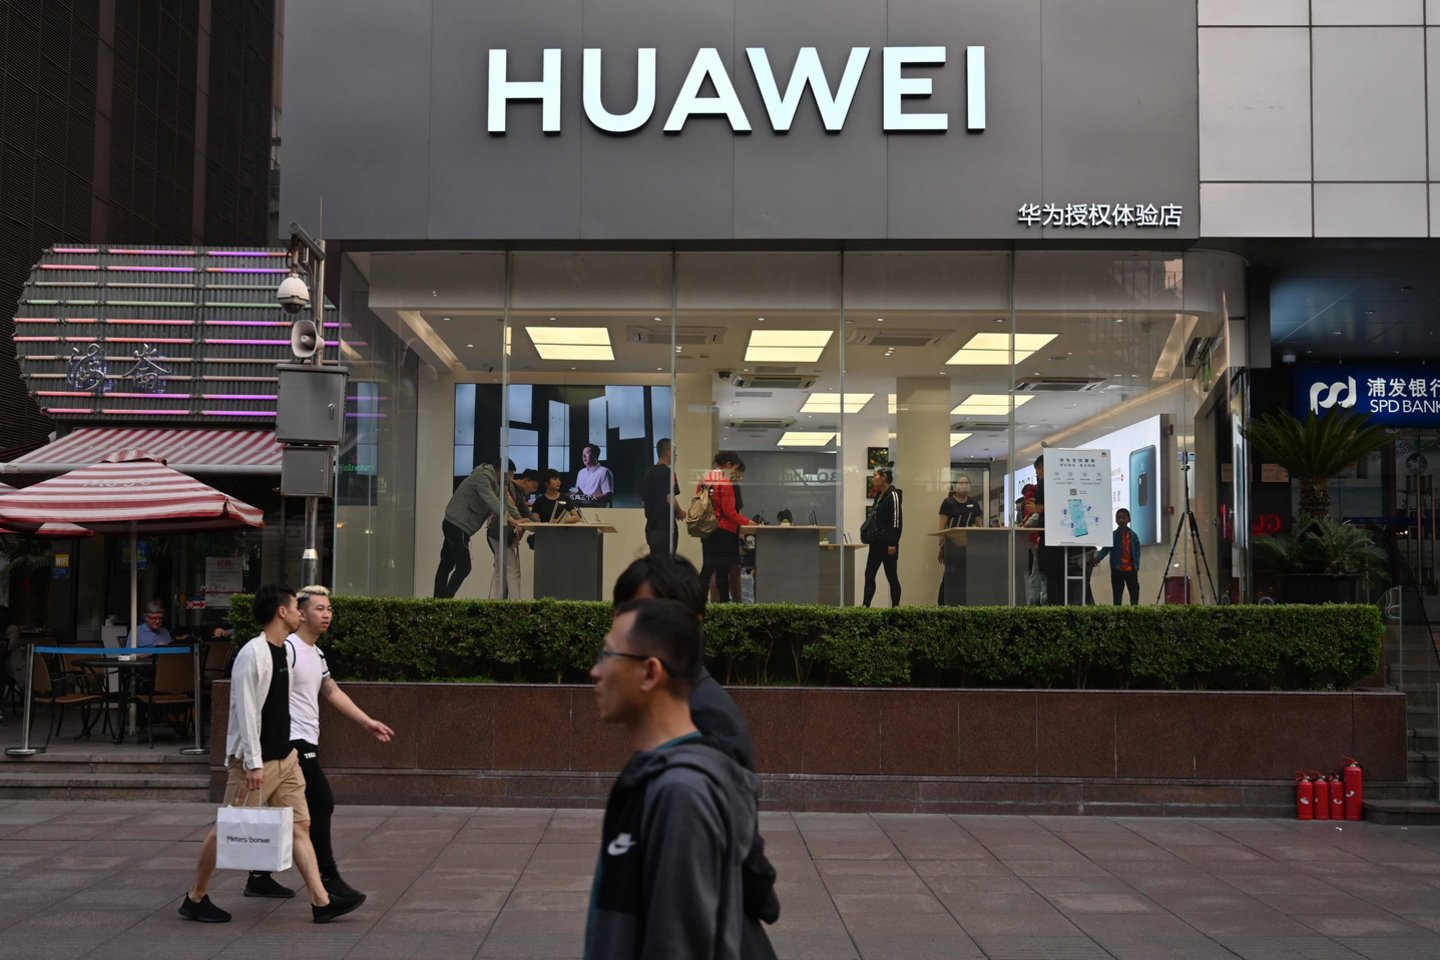 5G ryšys naudojamas įvairiausiose srityse. „Huawei“ į mokslinių tyrimų ir plėtros sritį investuoja 14 proc. įmonės pajamų. Šioje srityje dirba 45 proc. įmonės darbuotojų, technologija pristatoma ir žmonėms.<br>Scanpix nuotr.